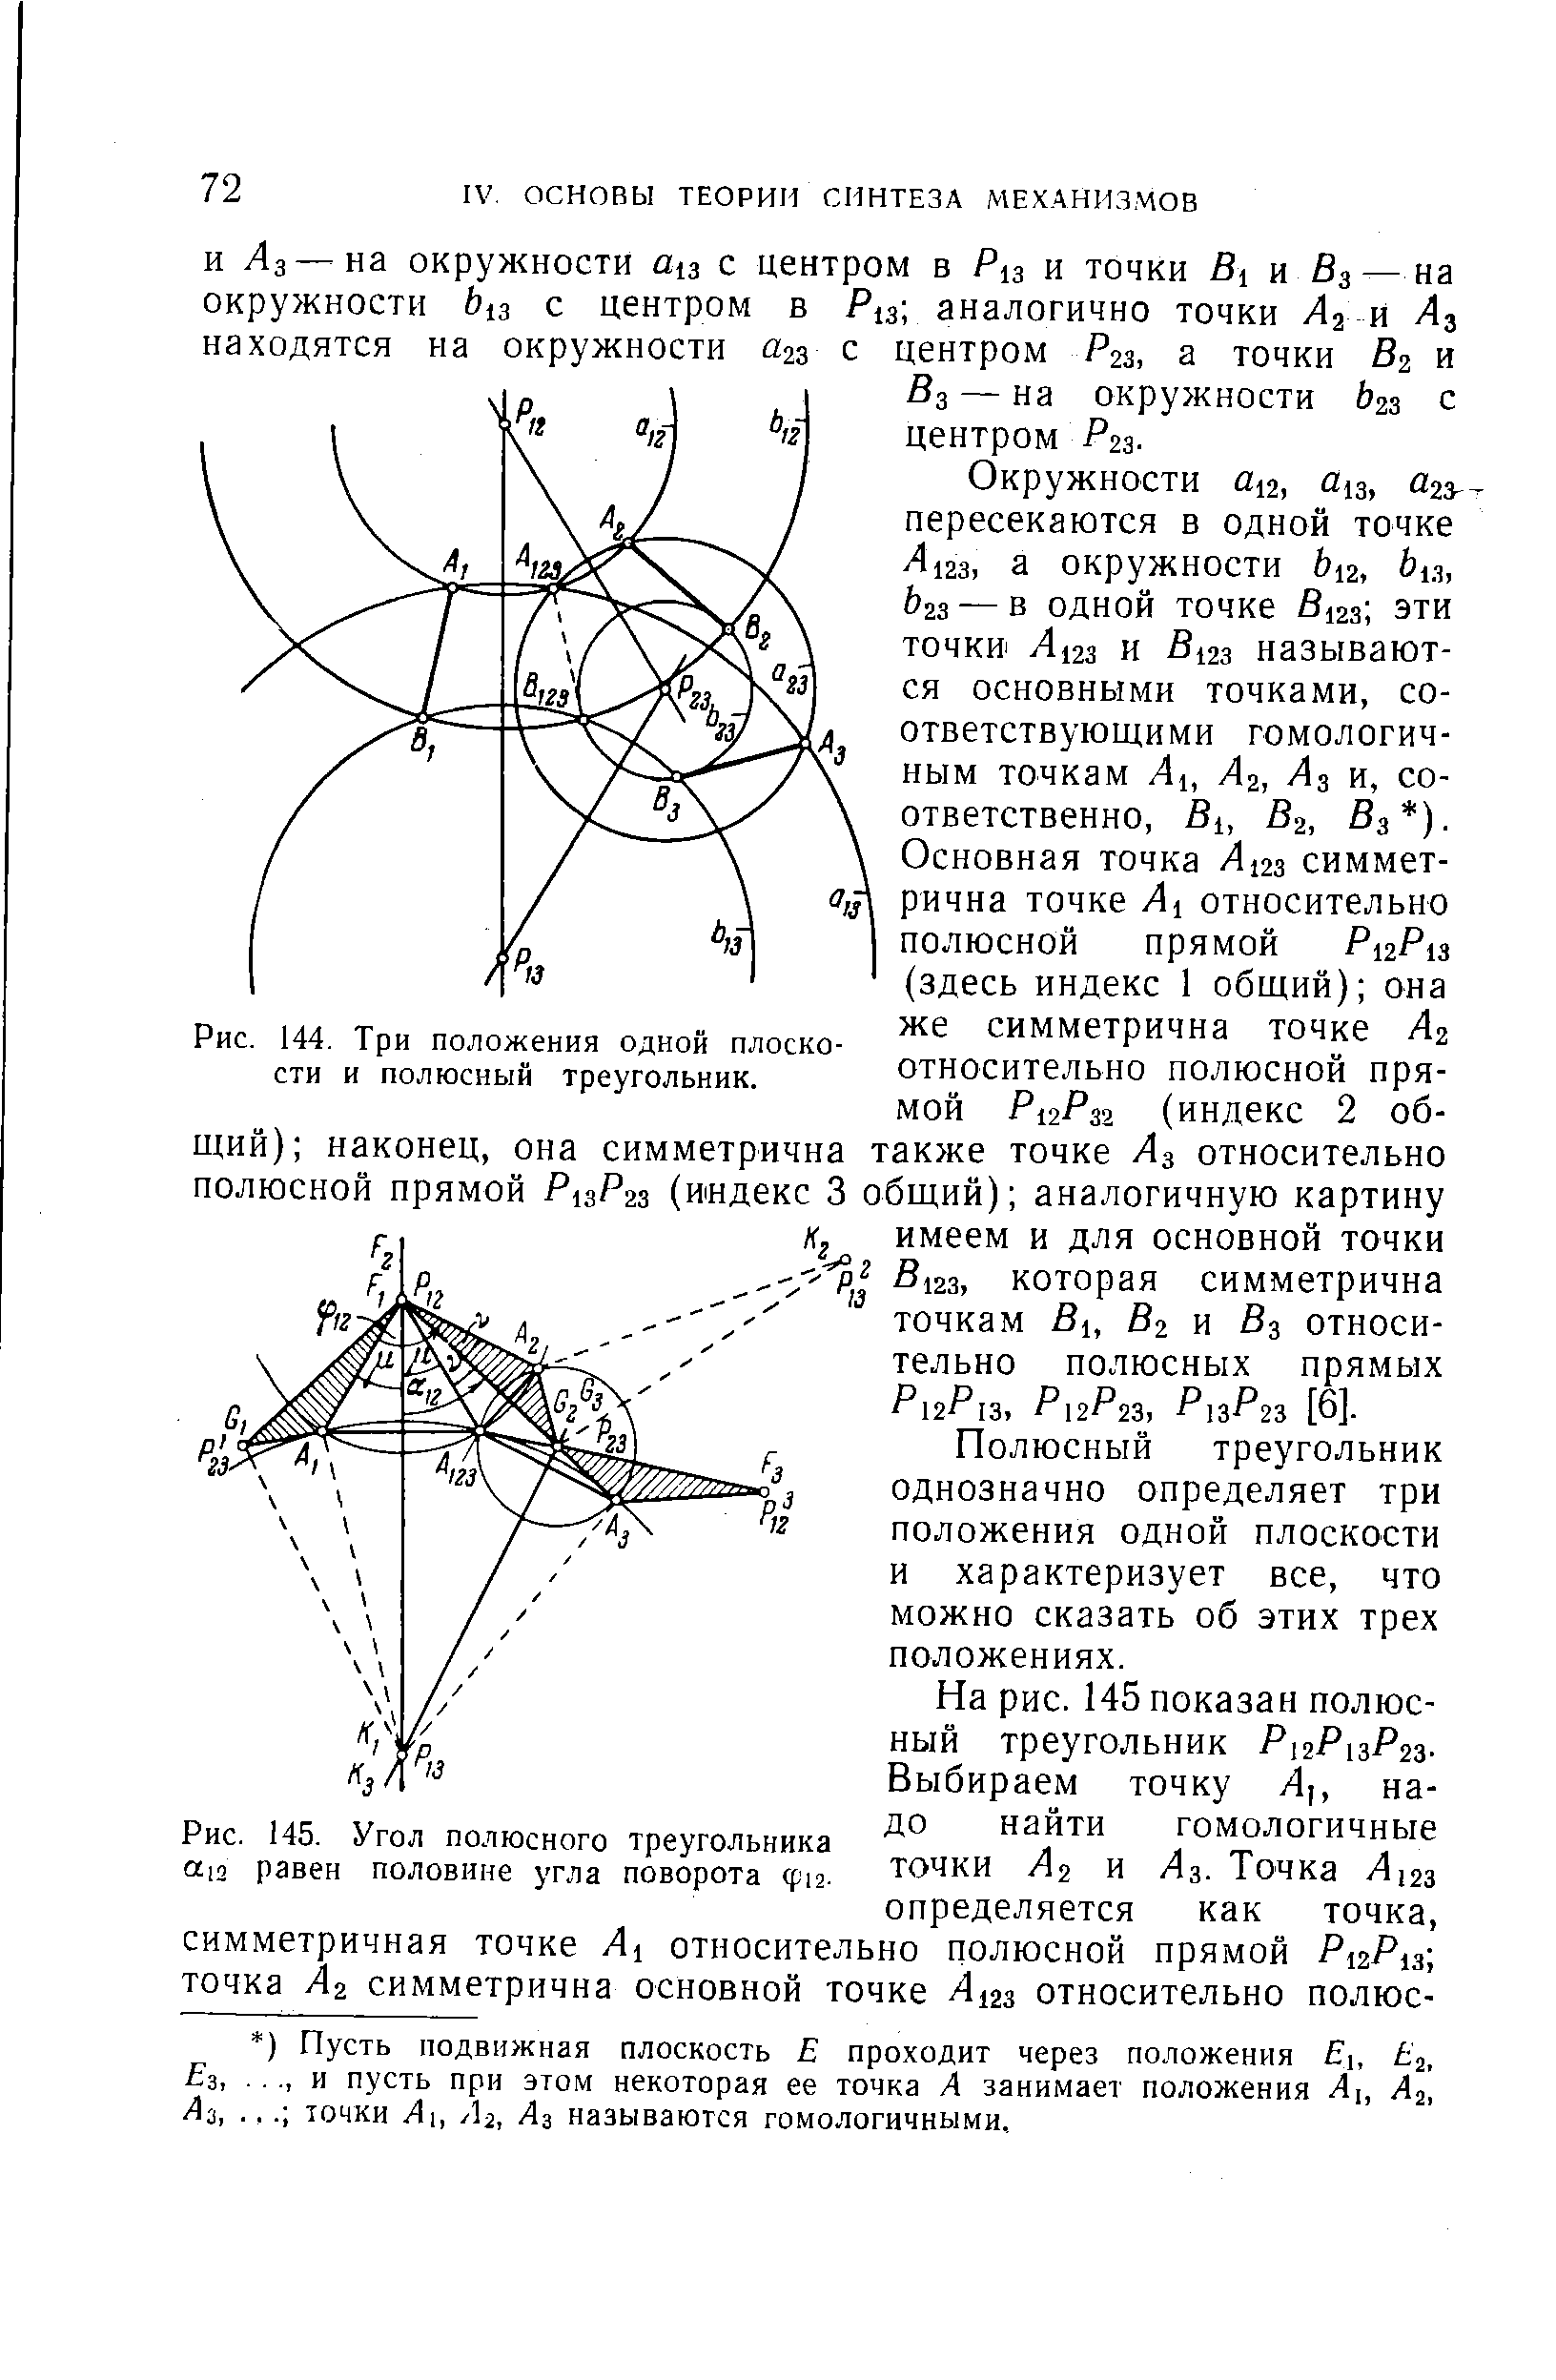 Рис. 145. Угол полюсного треугольника oLin равен половине угла поворота Ф12.
